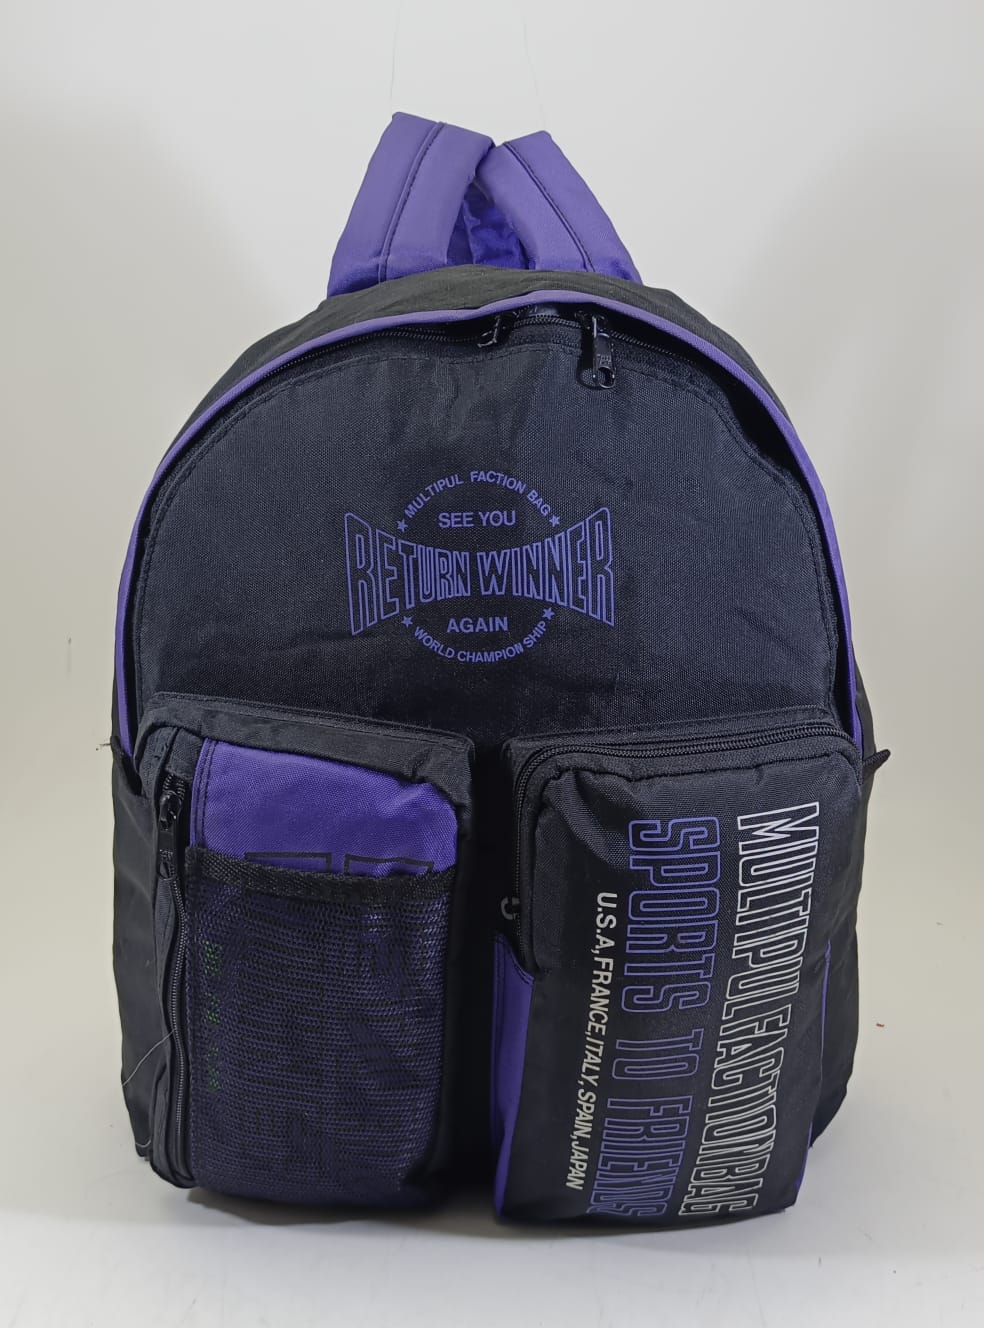 Multipul Facion Bag School Bag